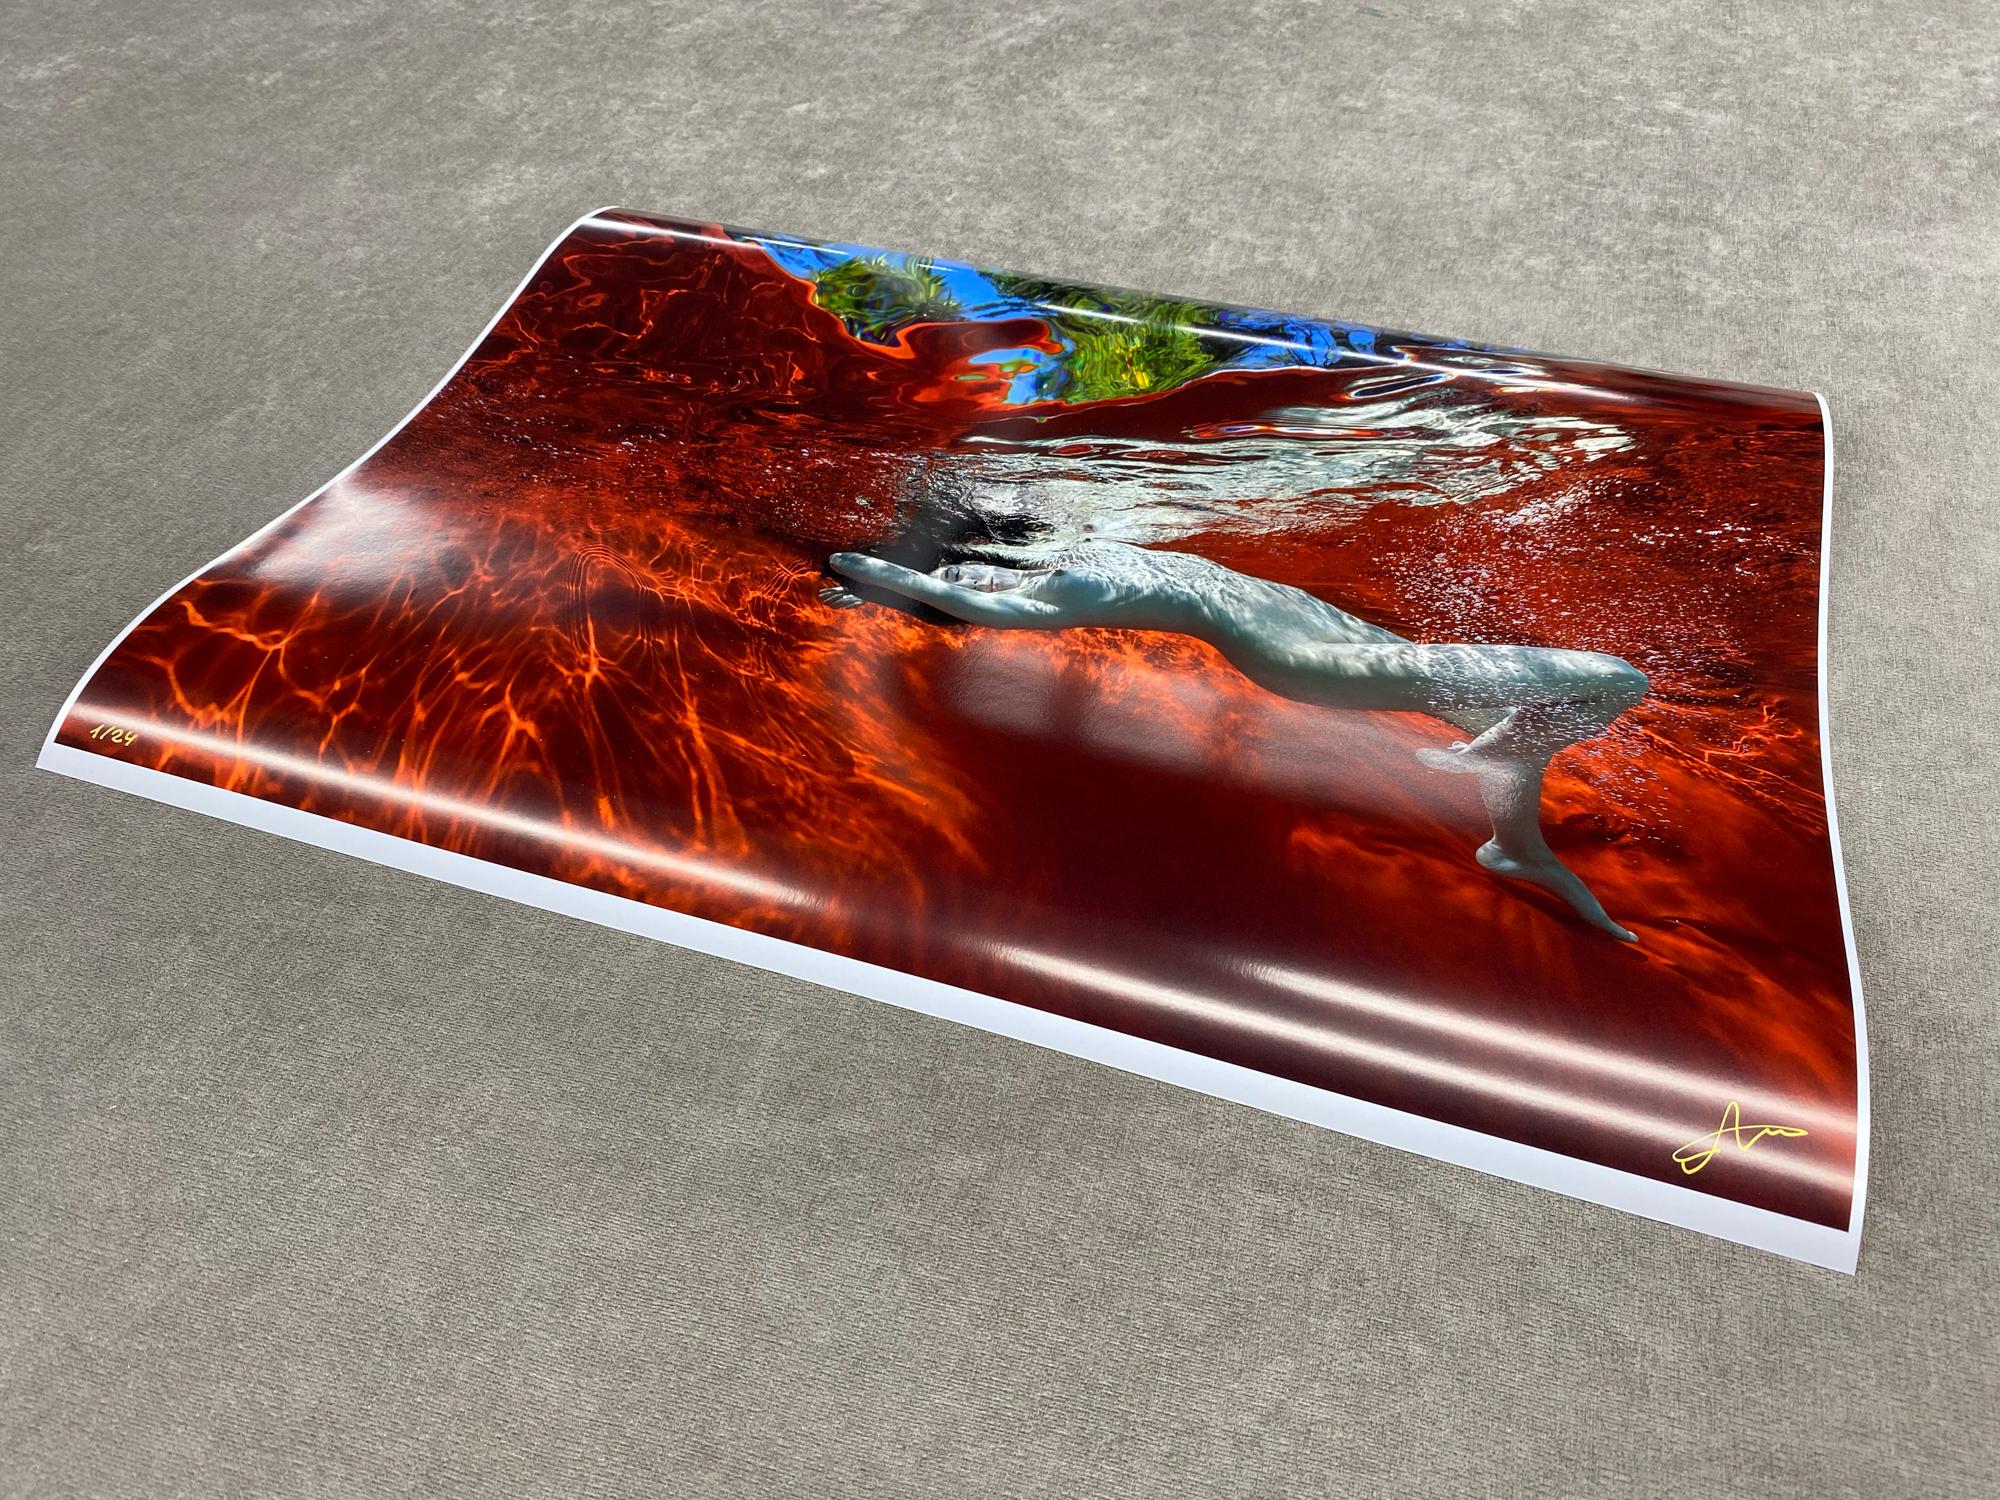 Garten-Garten-Garten-Pool – Aktfotografie im Unterwasser – Druck auf Papier 18 x 24